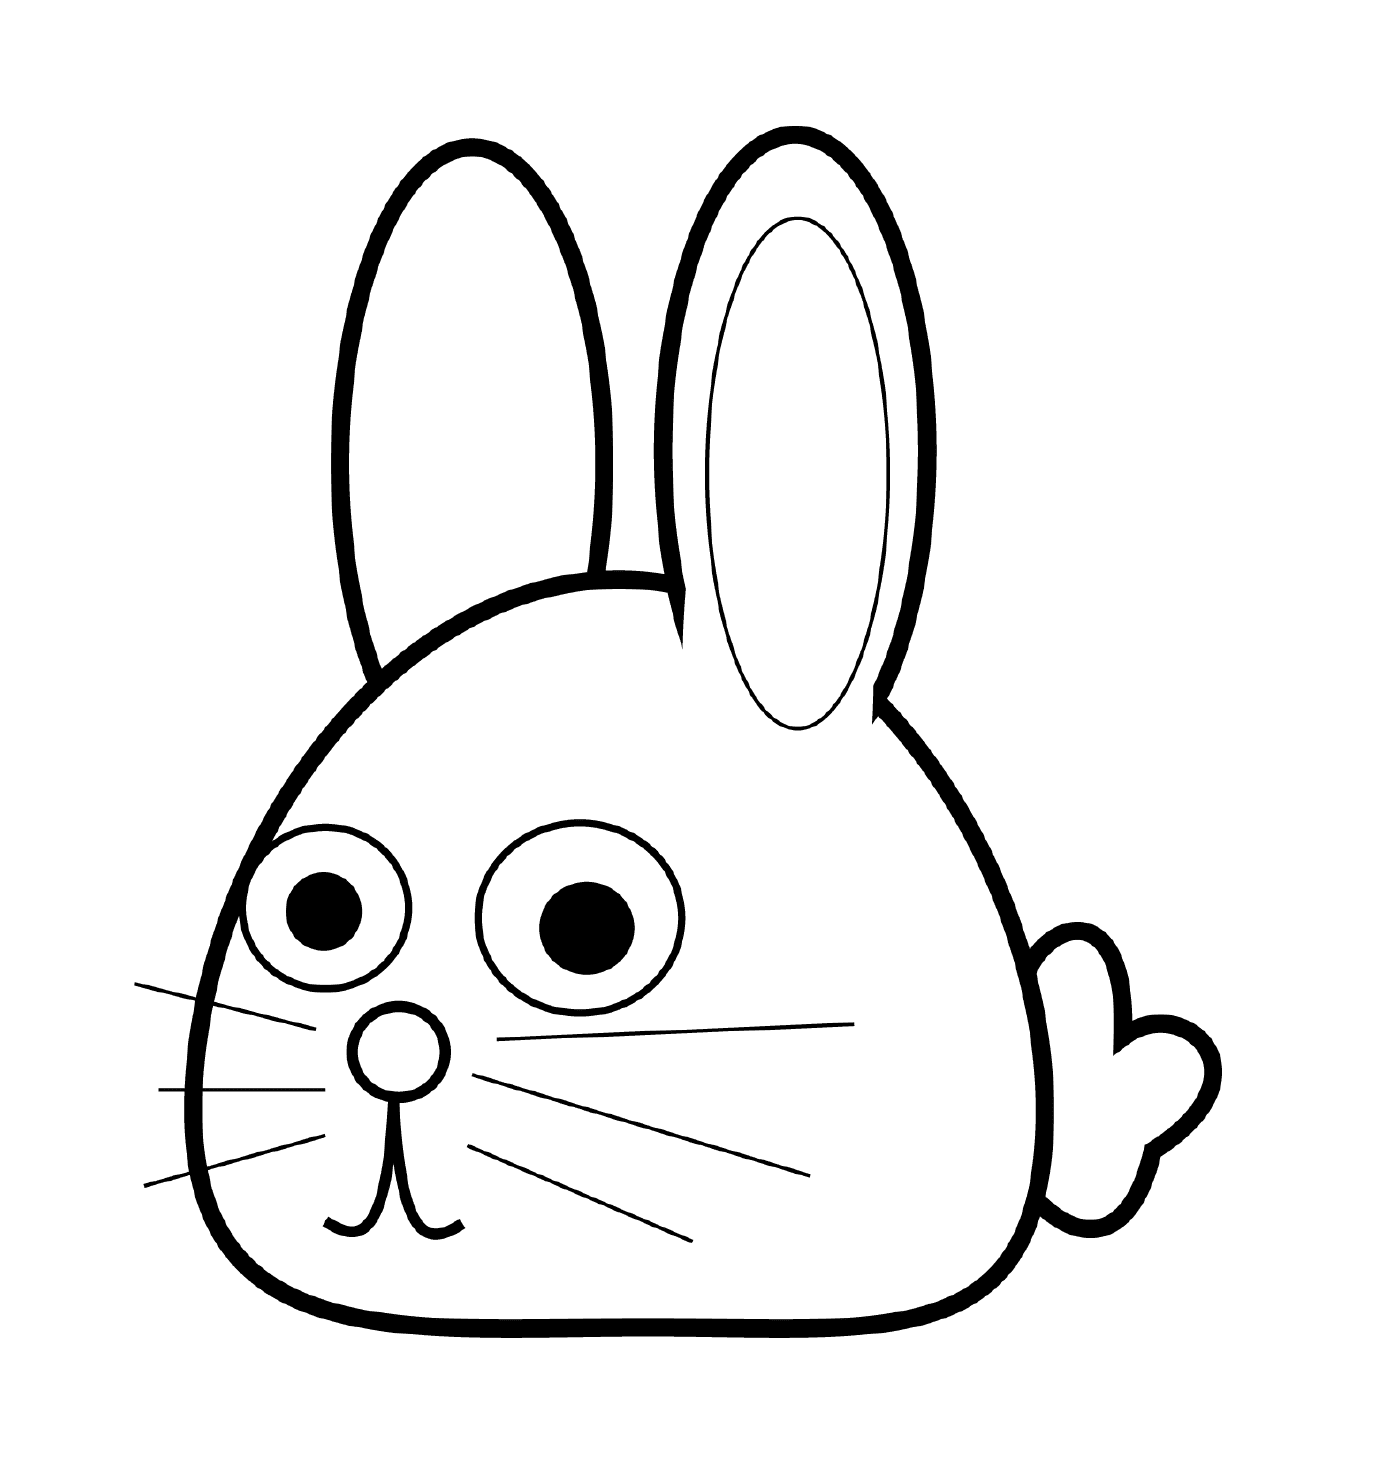  兔子头 可爱可爱的Kawaii 